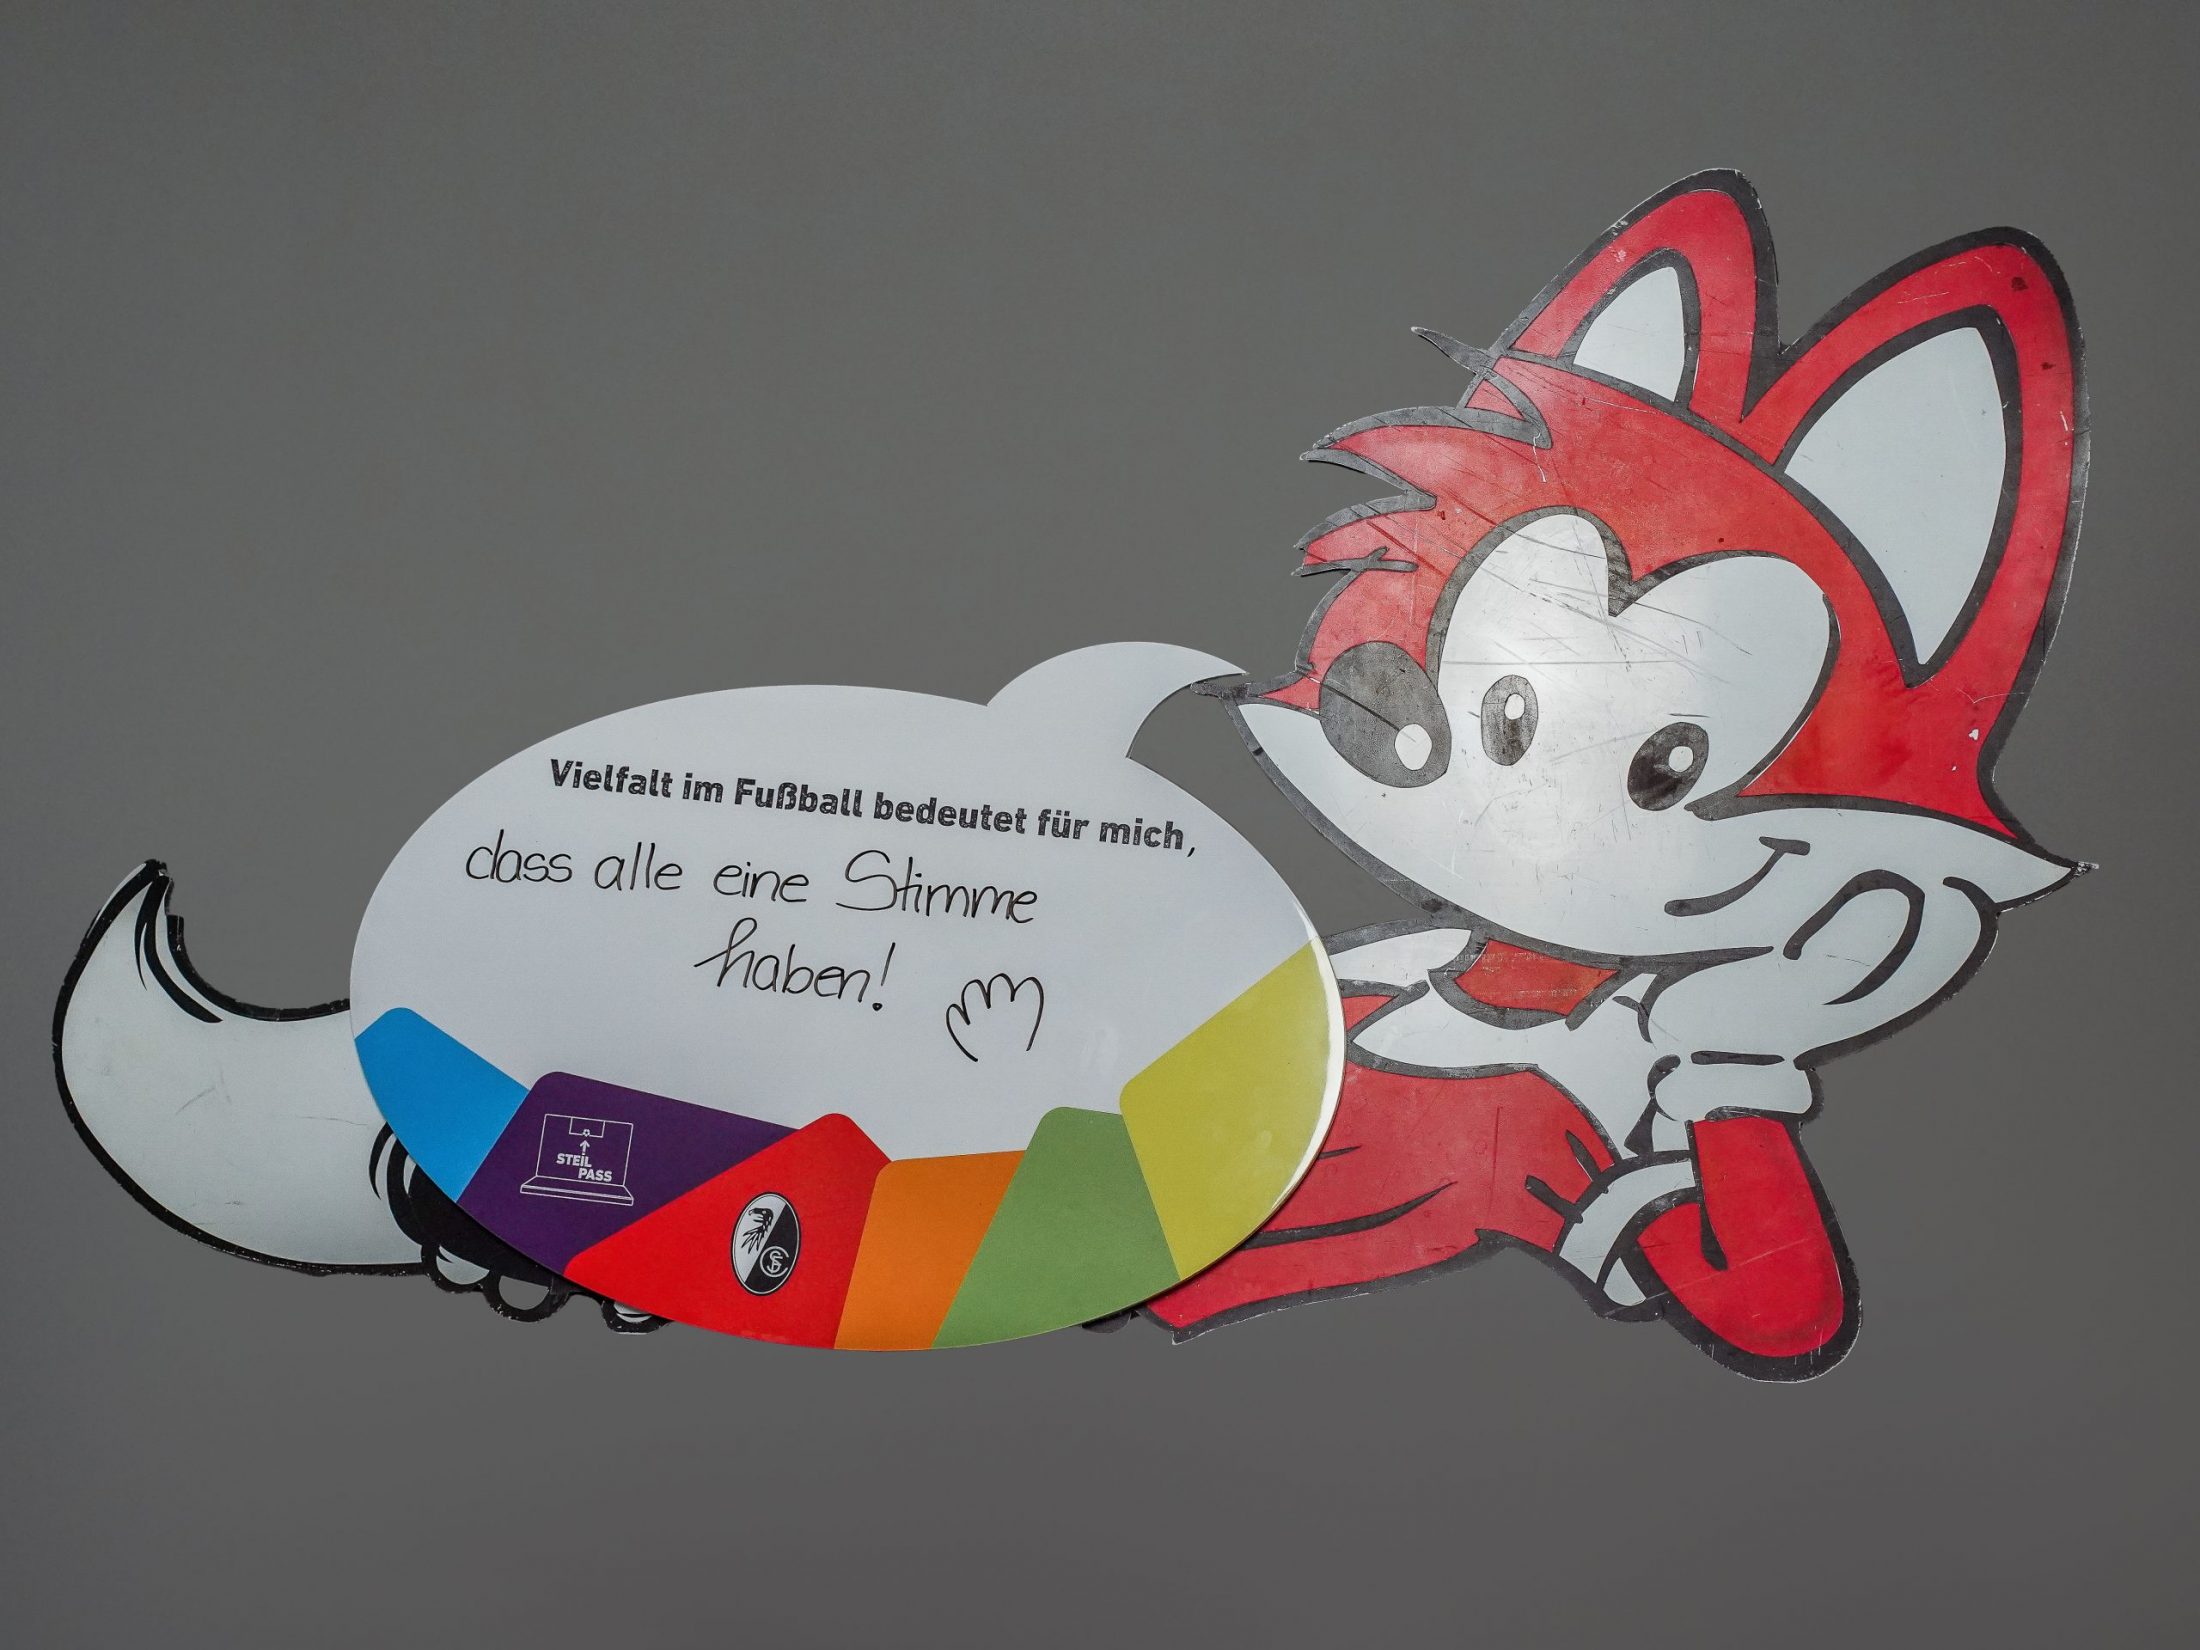 Eine rote Fuchs-Figur hält eine Sprechblasenschild . "Vielfalt im Fußball bedeutet für mich, dass alle eine Stimme haben!", steht darauf geschrieben.